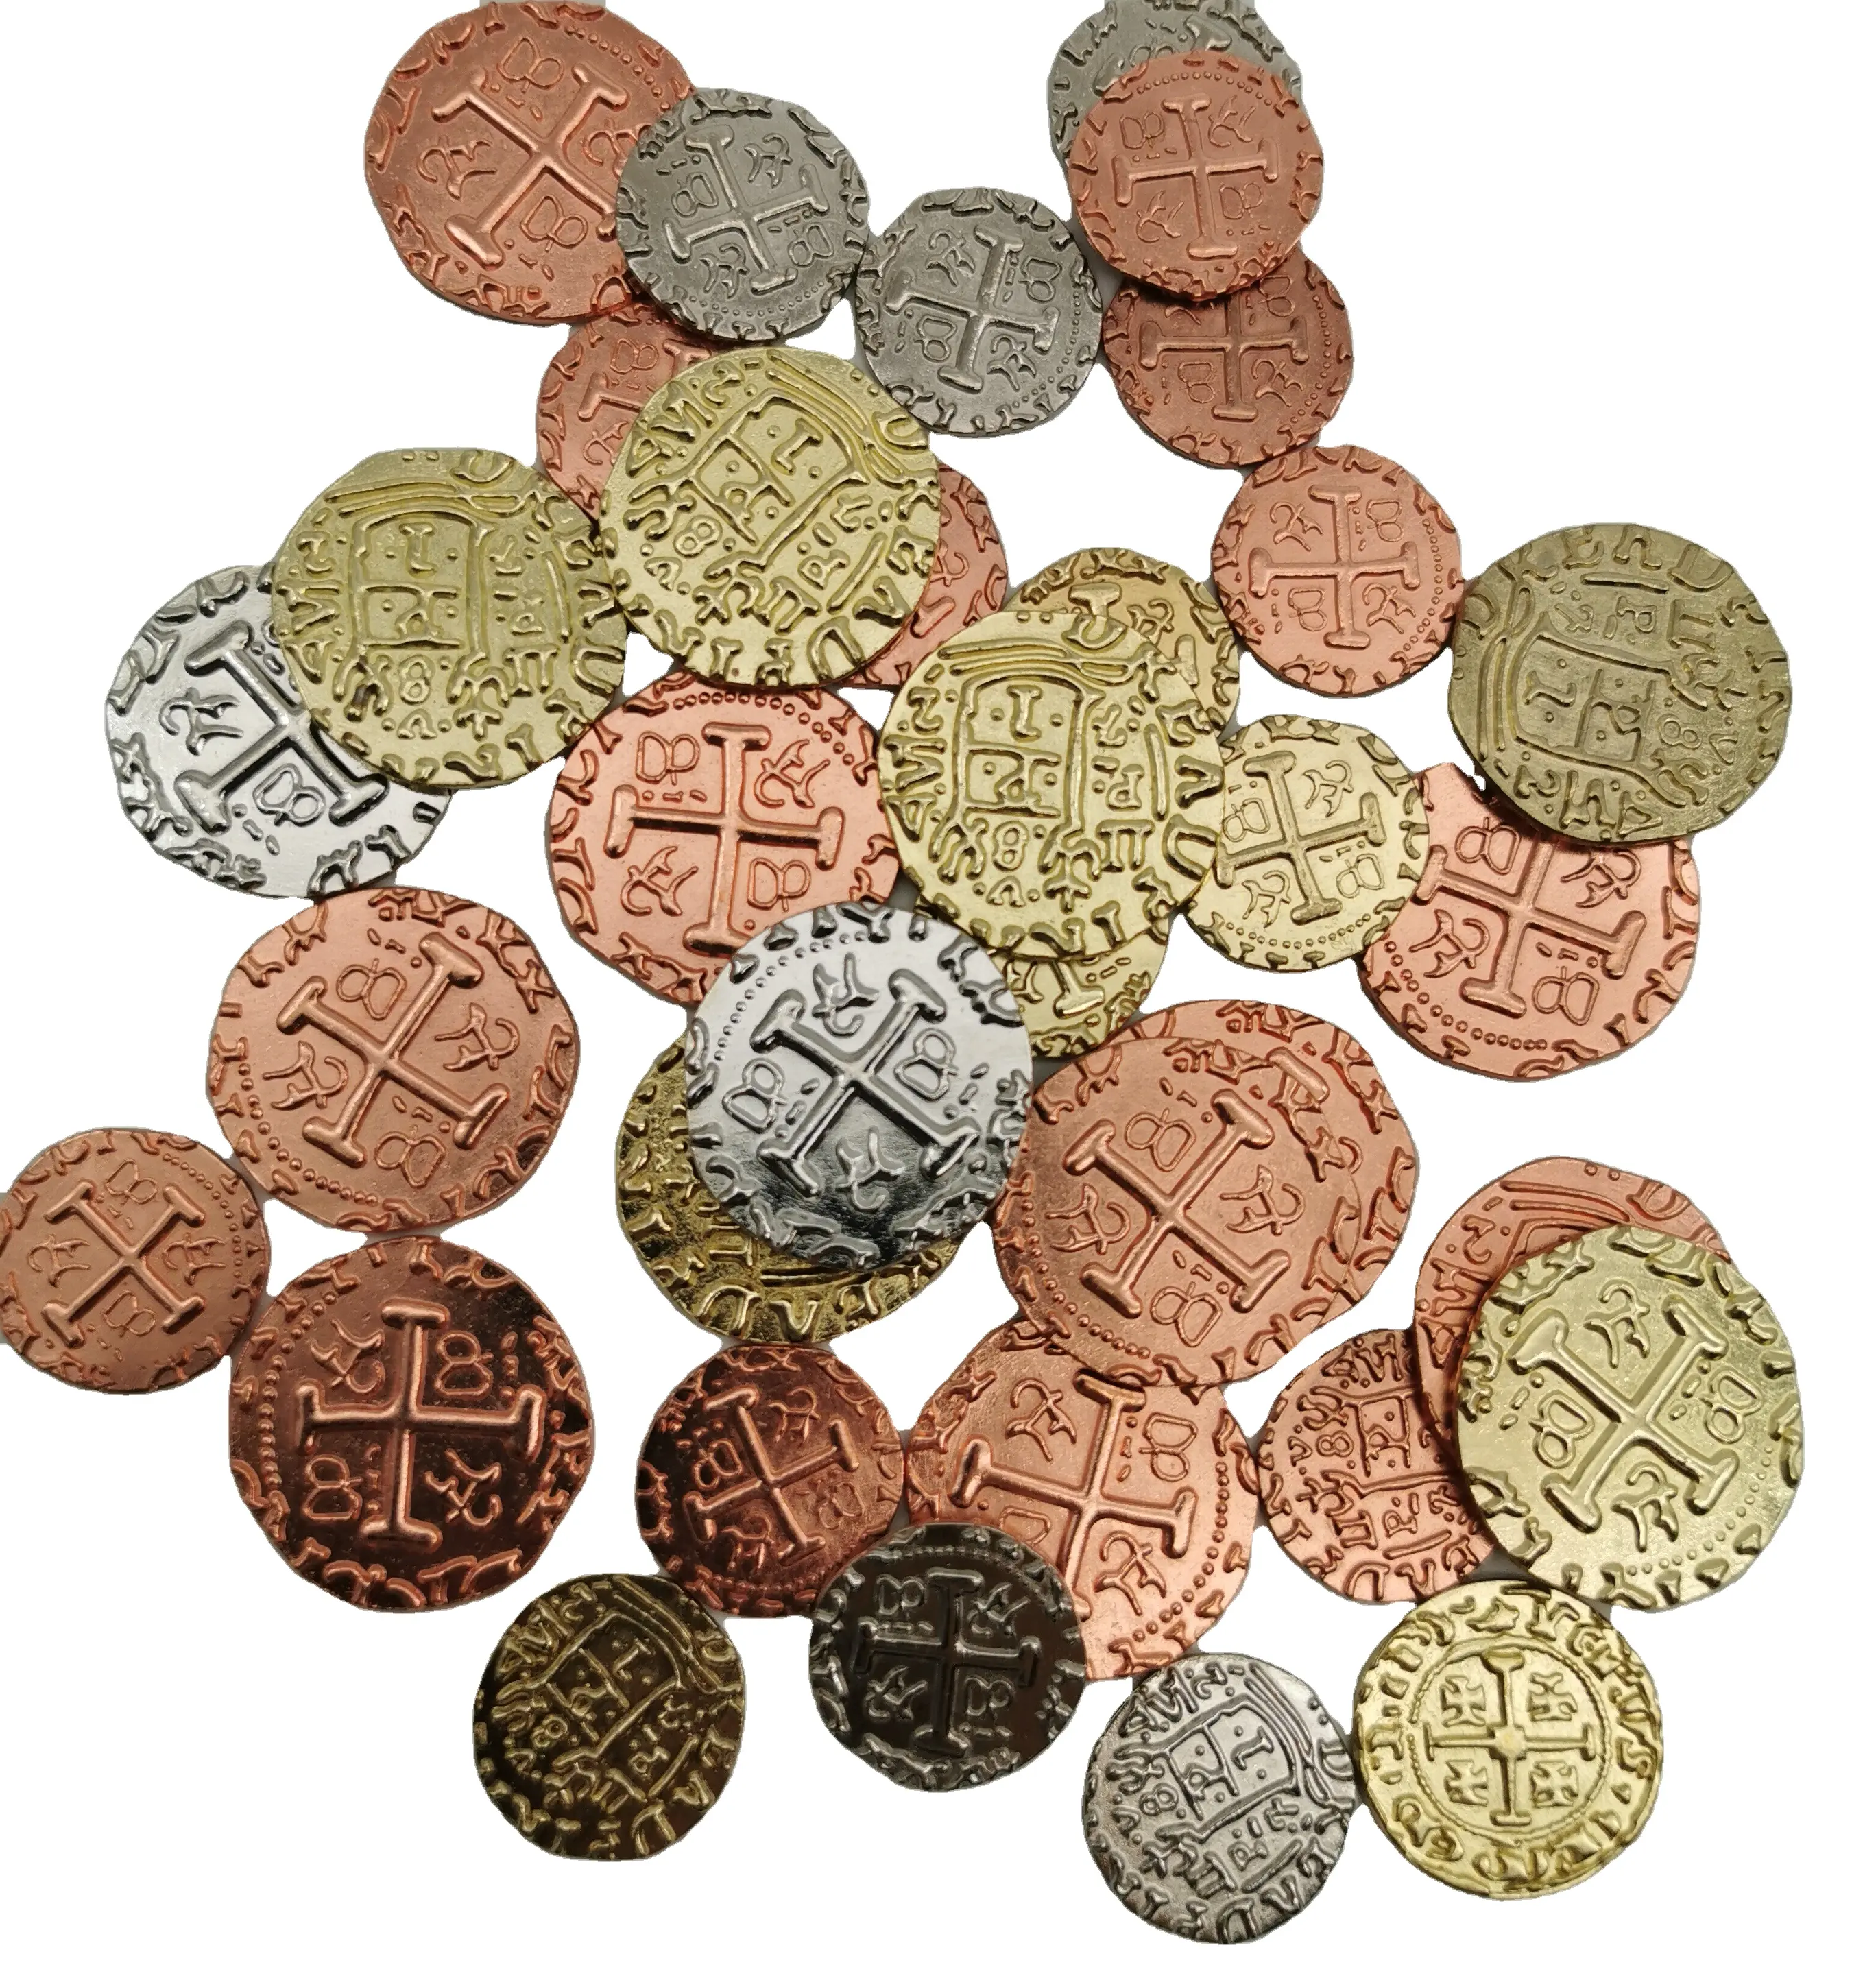 Monedas de metal al por mayor para juegos, precio más barato, monedas piratas para juegos y colección